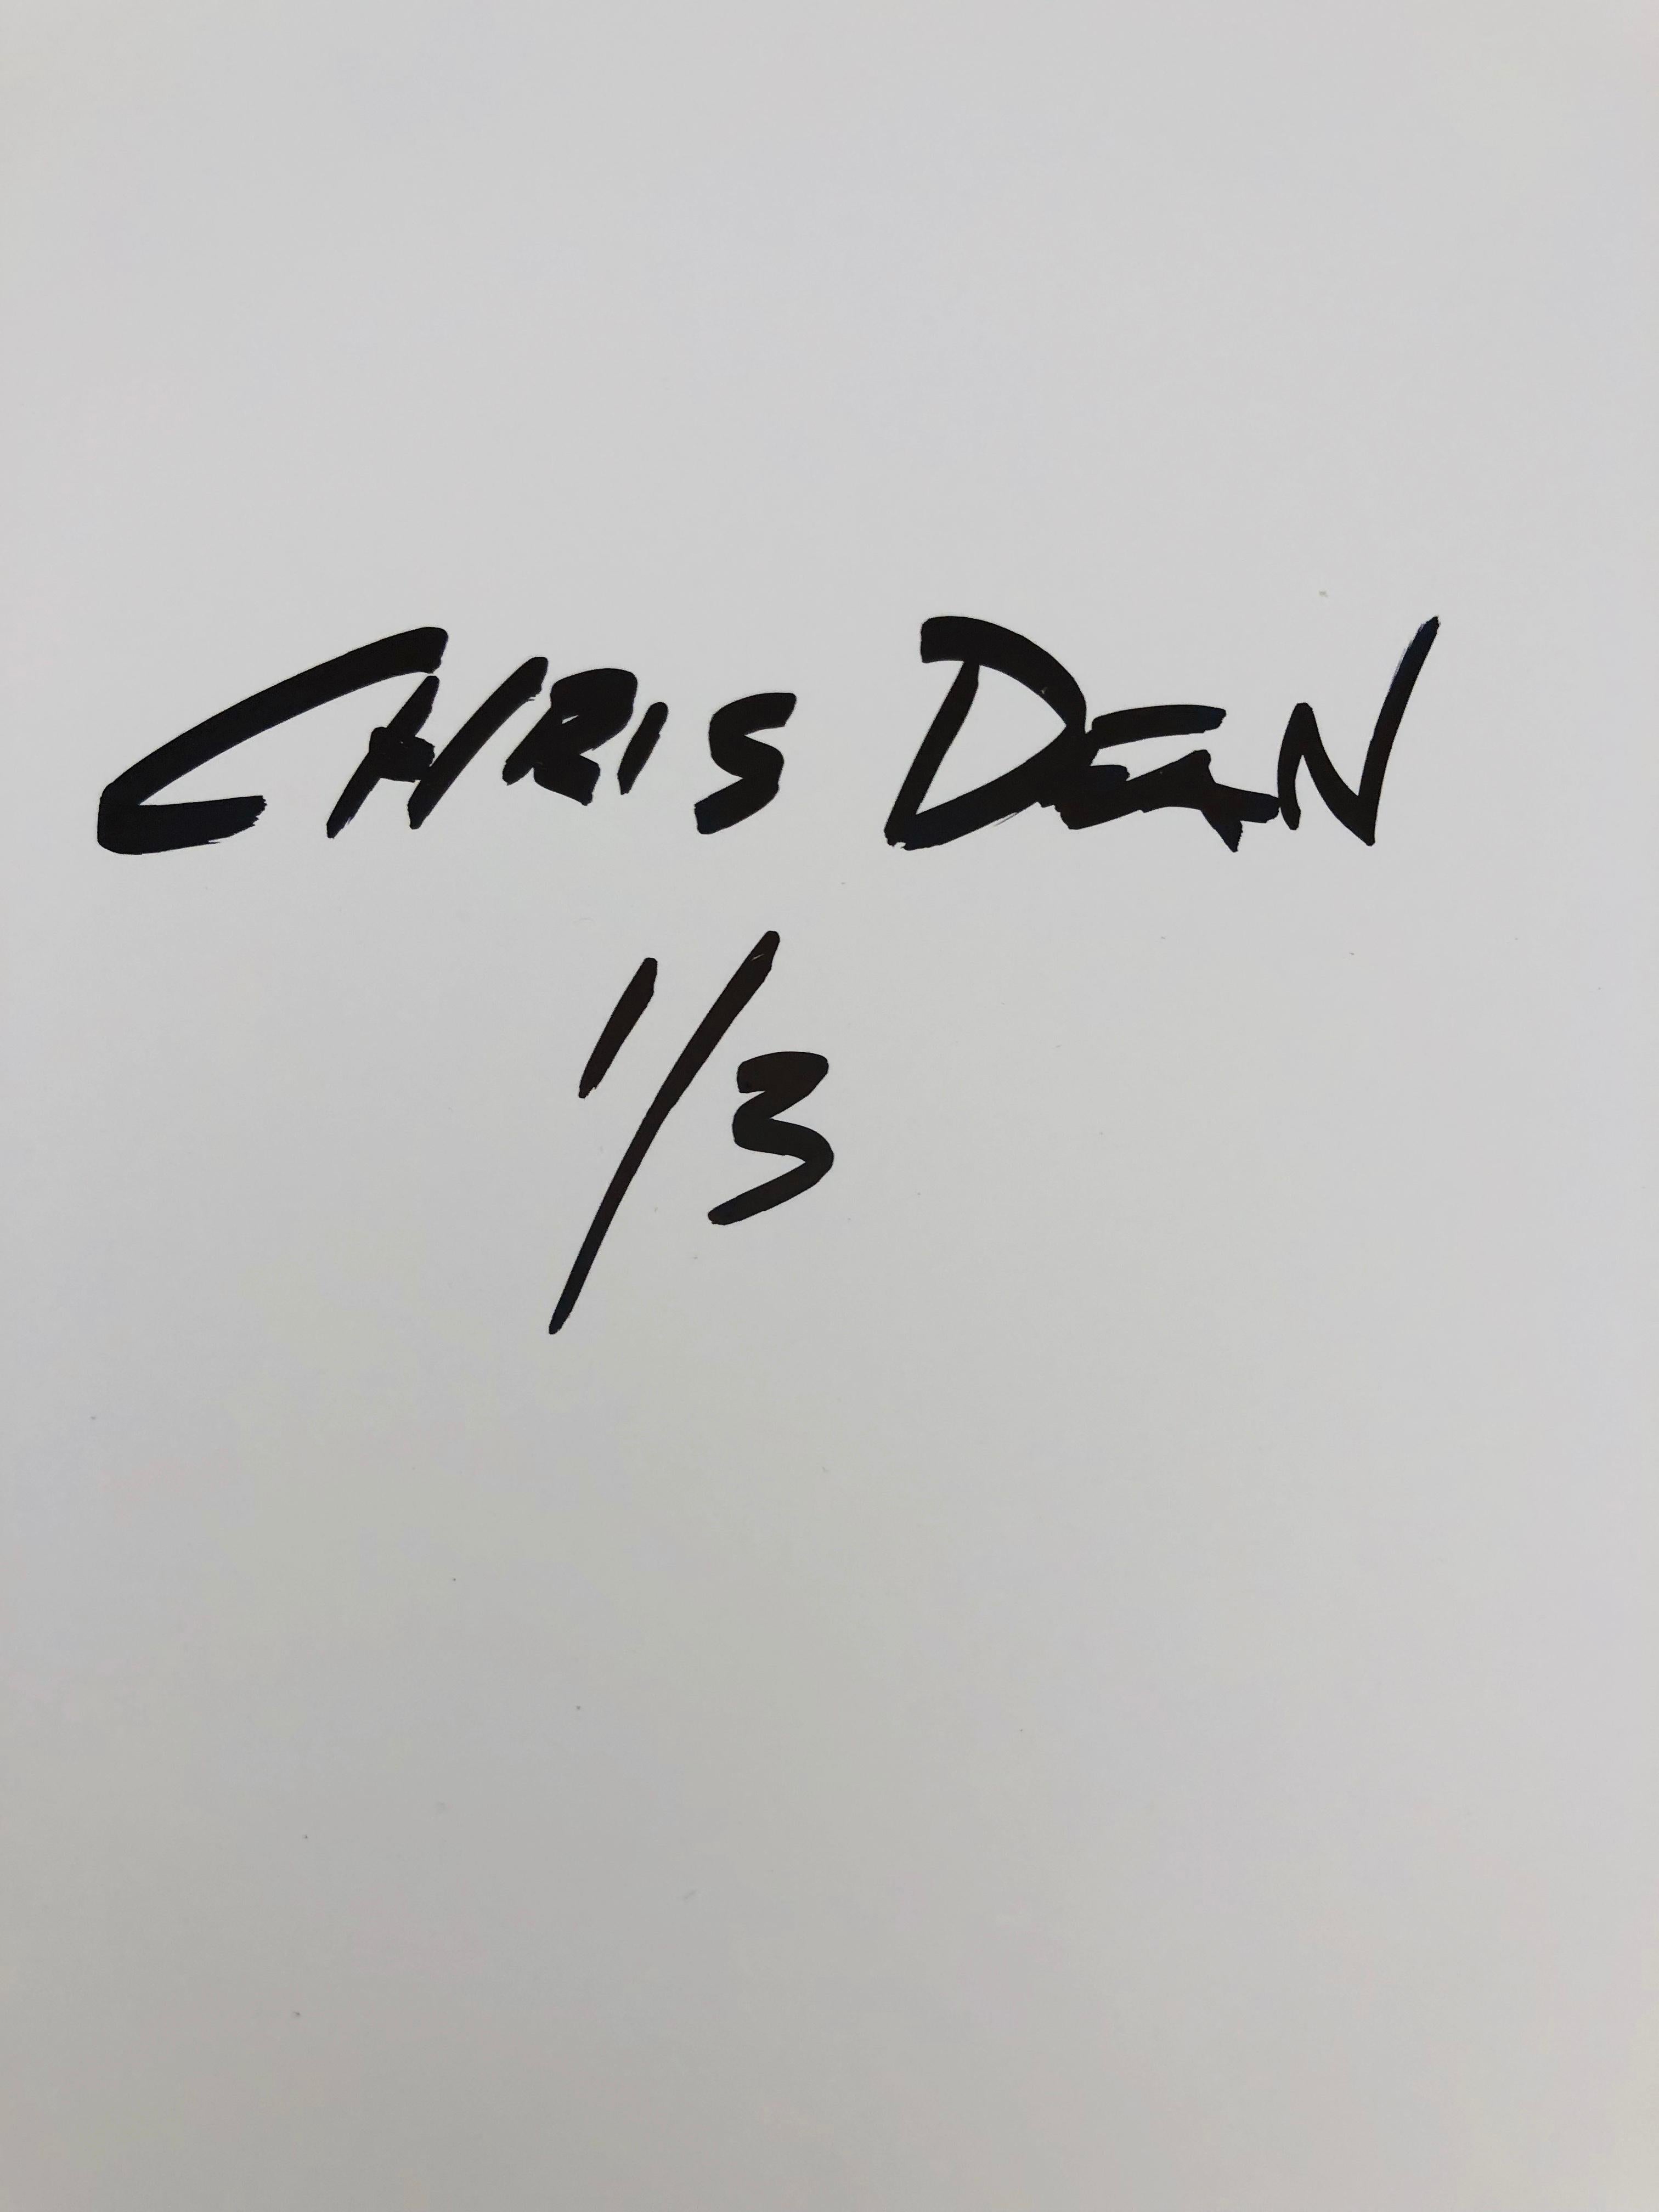 Chris Deans est un artiste basé à Détroit, spécialisé dans la gravure lenticulaire. Les œuvres aux couleurs vives de Deans utilisent la capacité unique d'illusion du lenticulaire pour créer des compositions interactives de profondeur et de